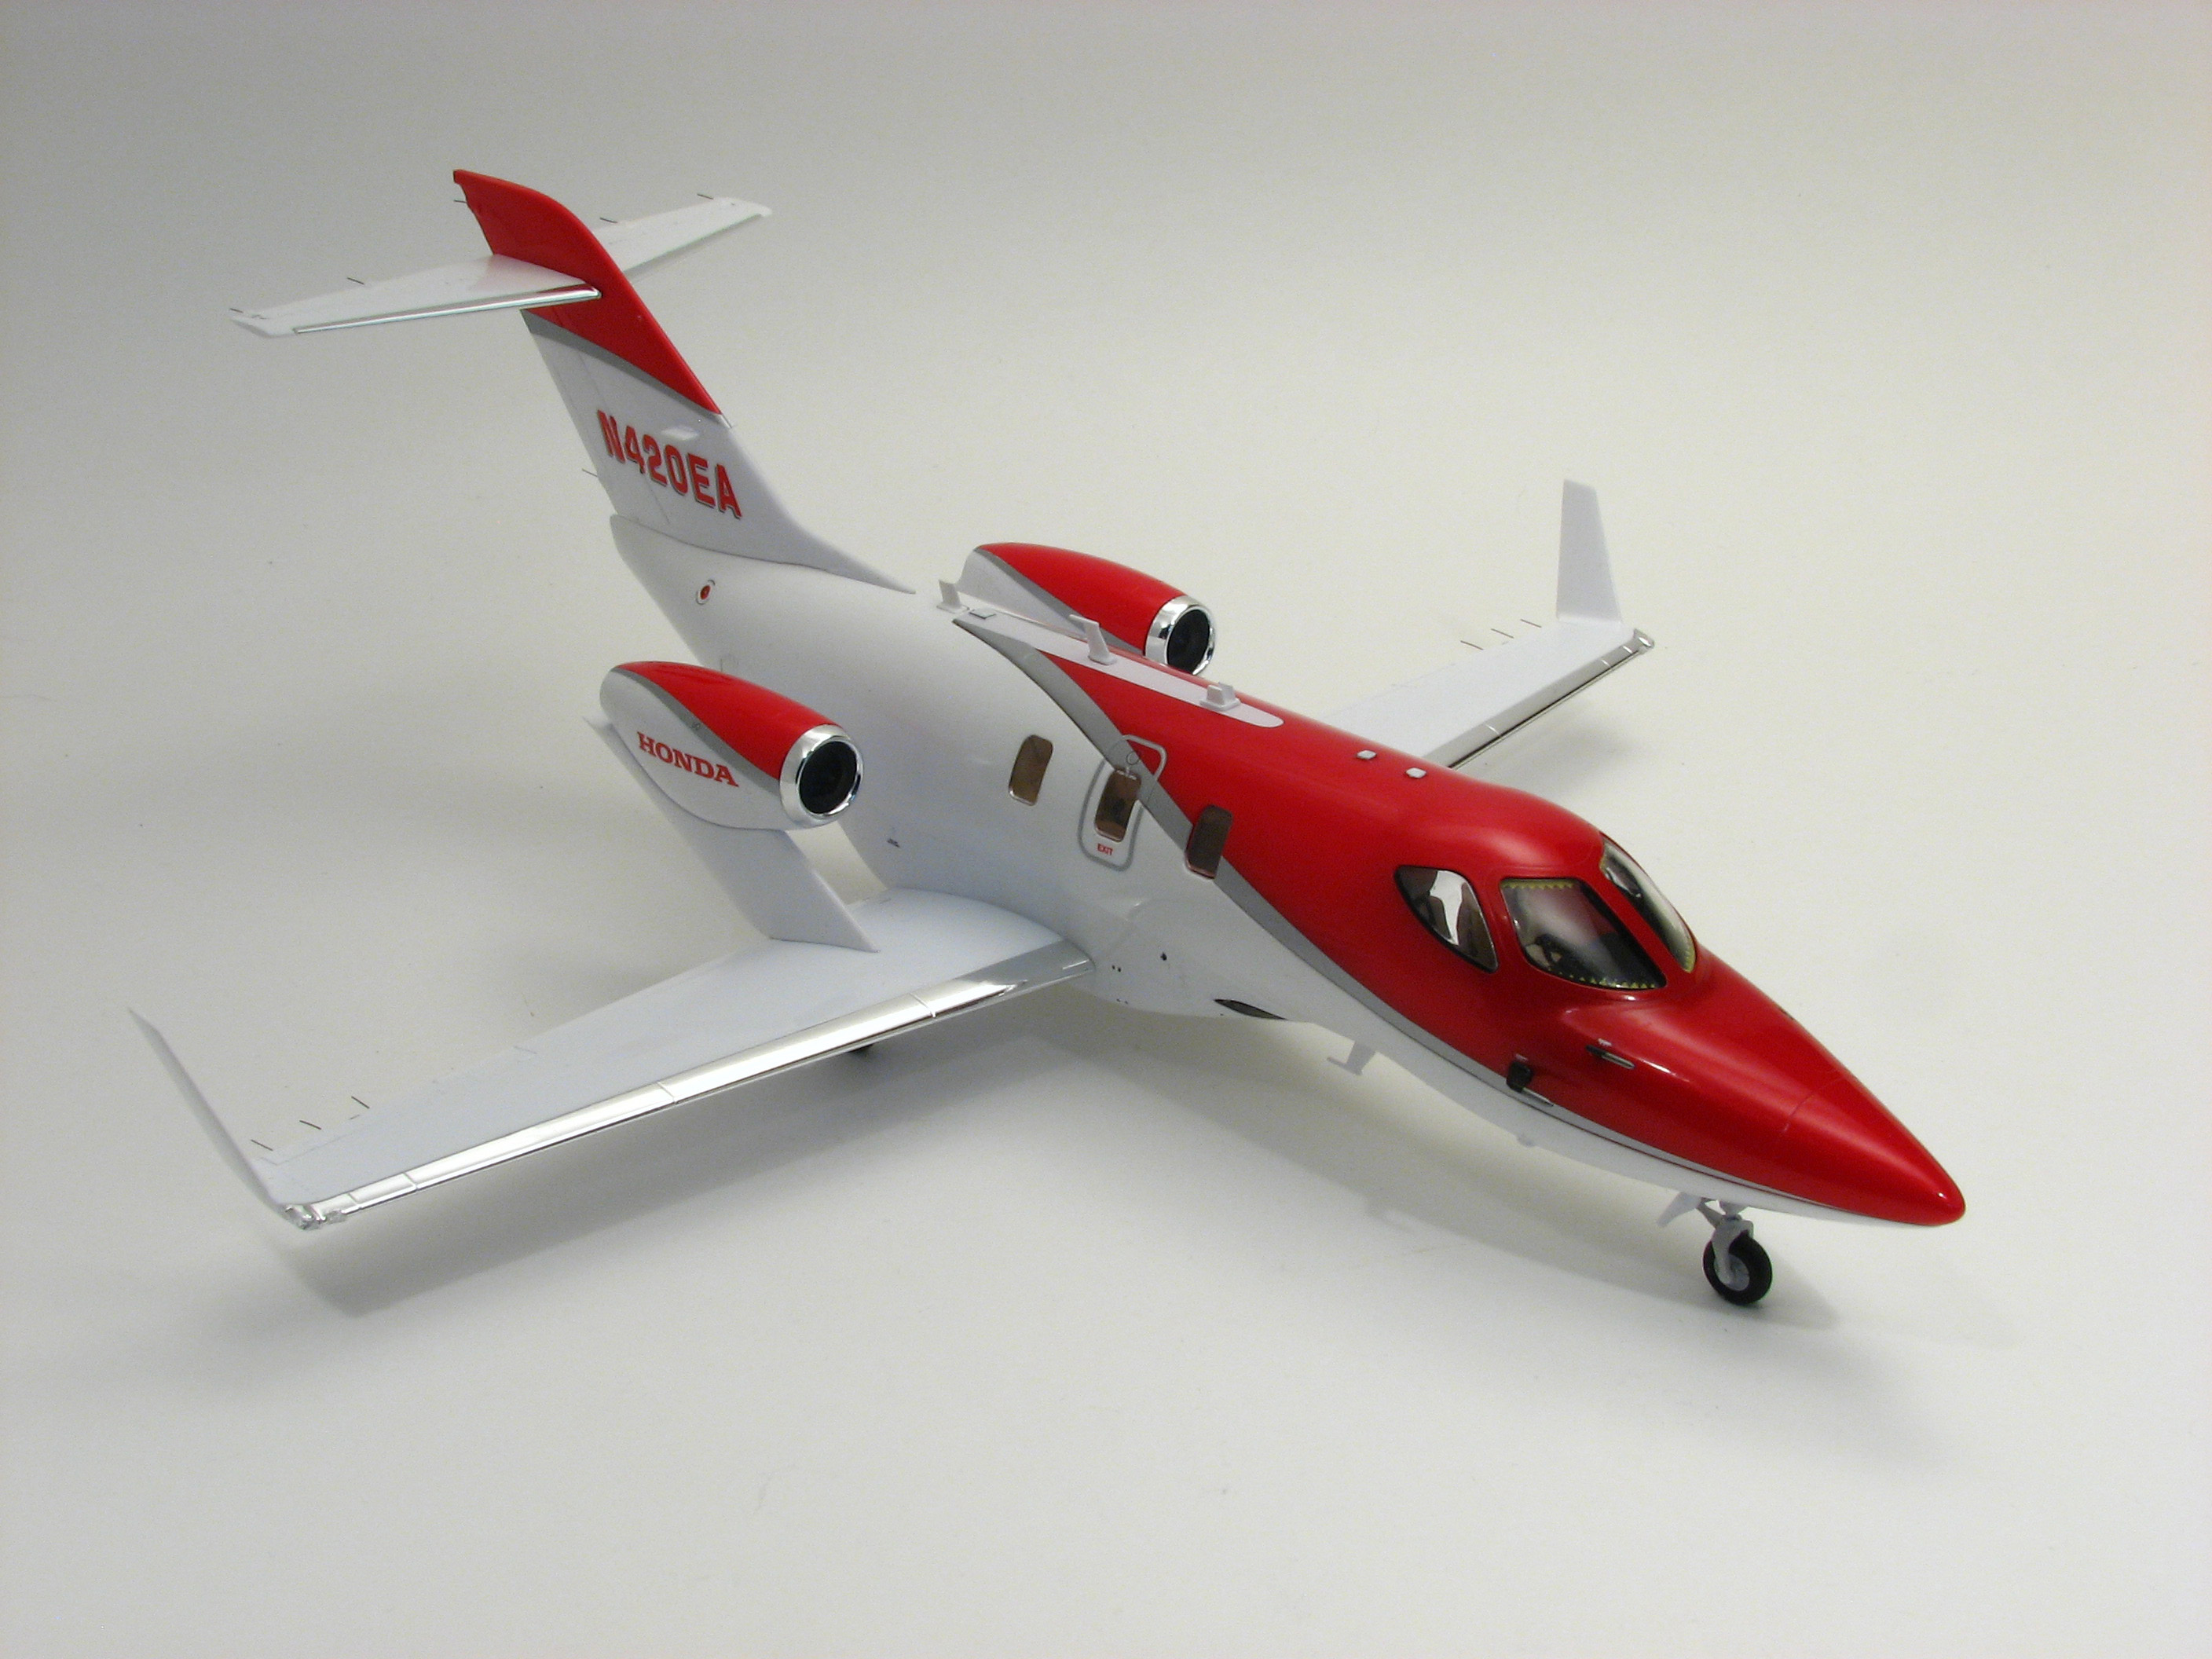 EBBRO 1/48 Hondajet Business Jet Plastic Model Kit 48001 Ebb48001 for sale online 